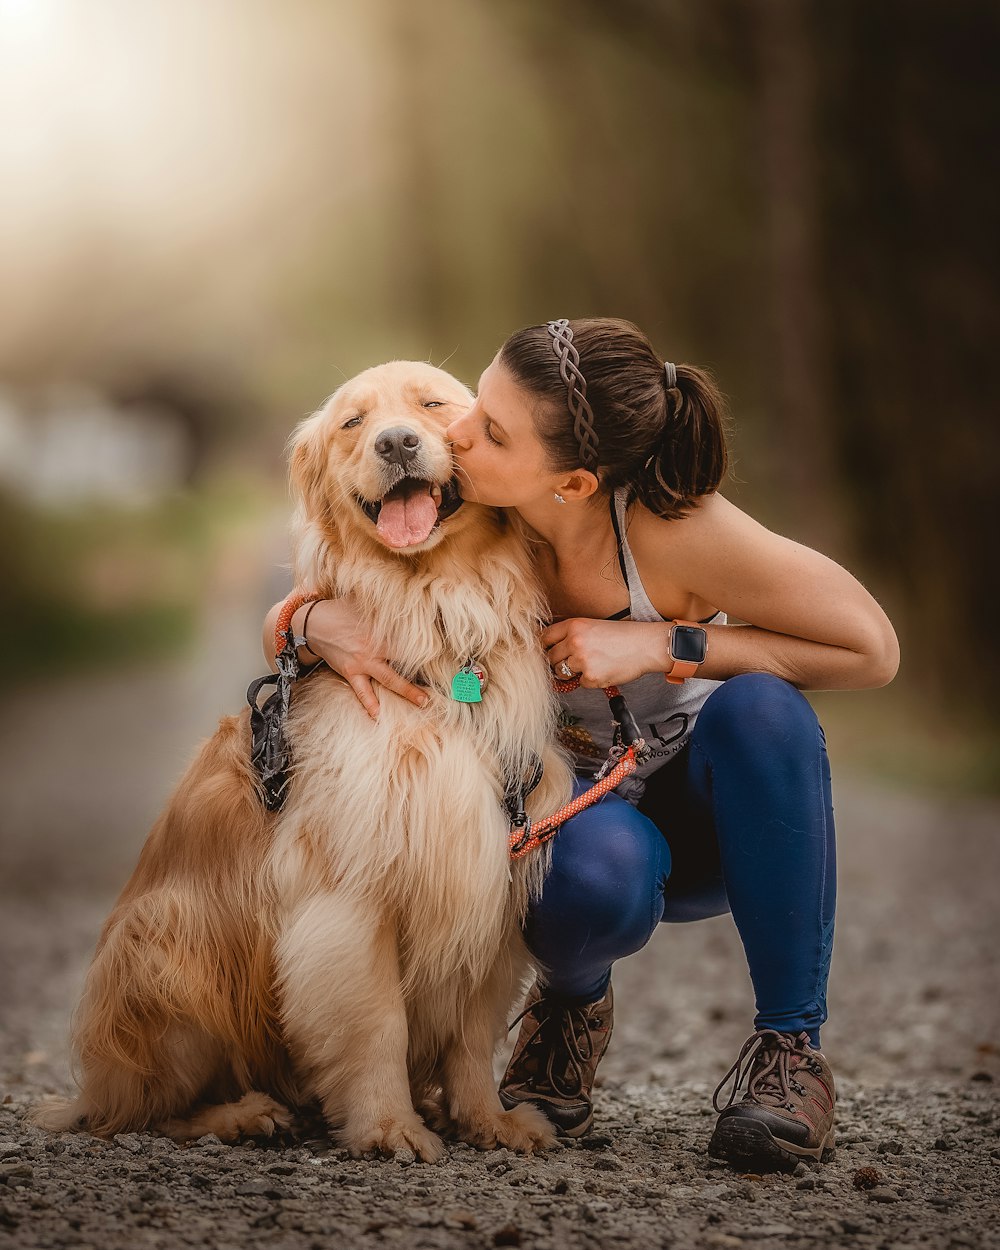 Eine Frau küsst ihren Hund auf die Wange